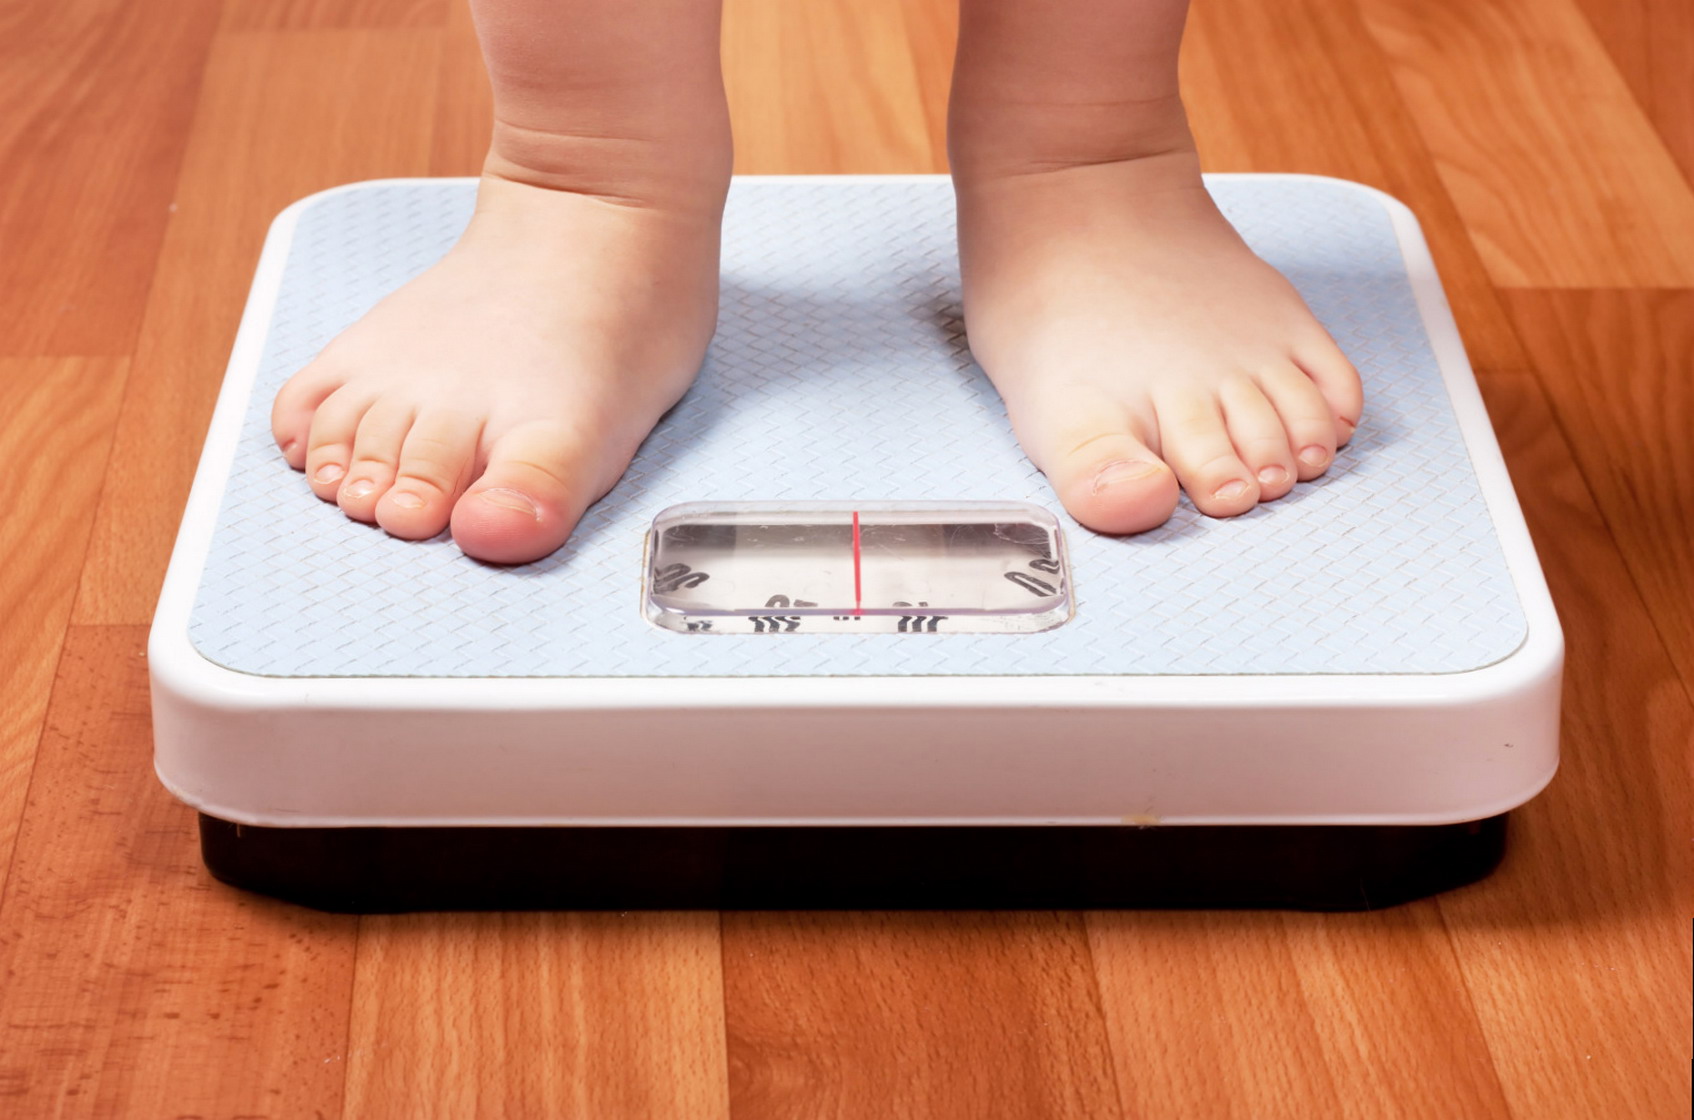 Educazione alimentare bambini obesi sovrappeso